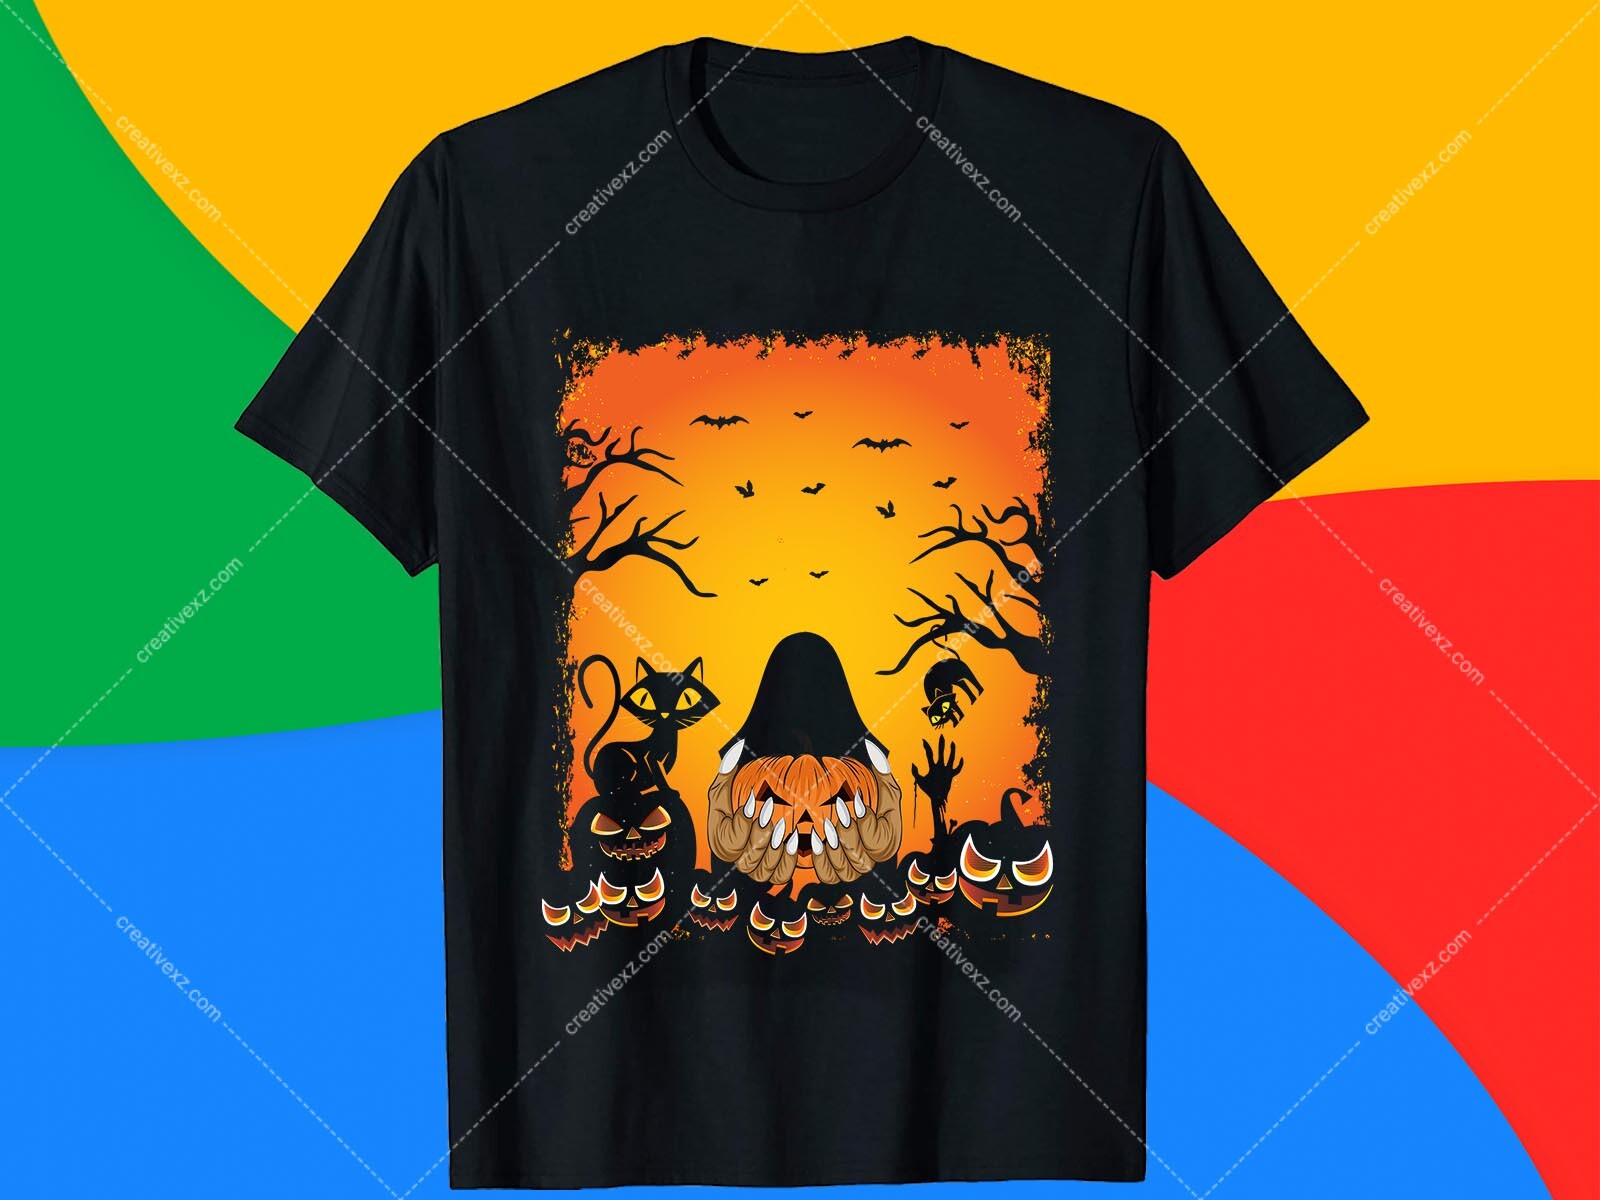 Roger Islam - Halloween T Shirt Design